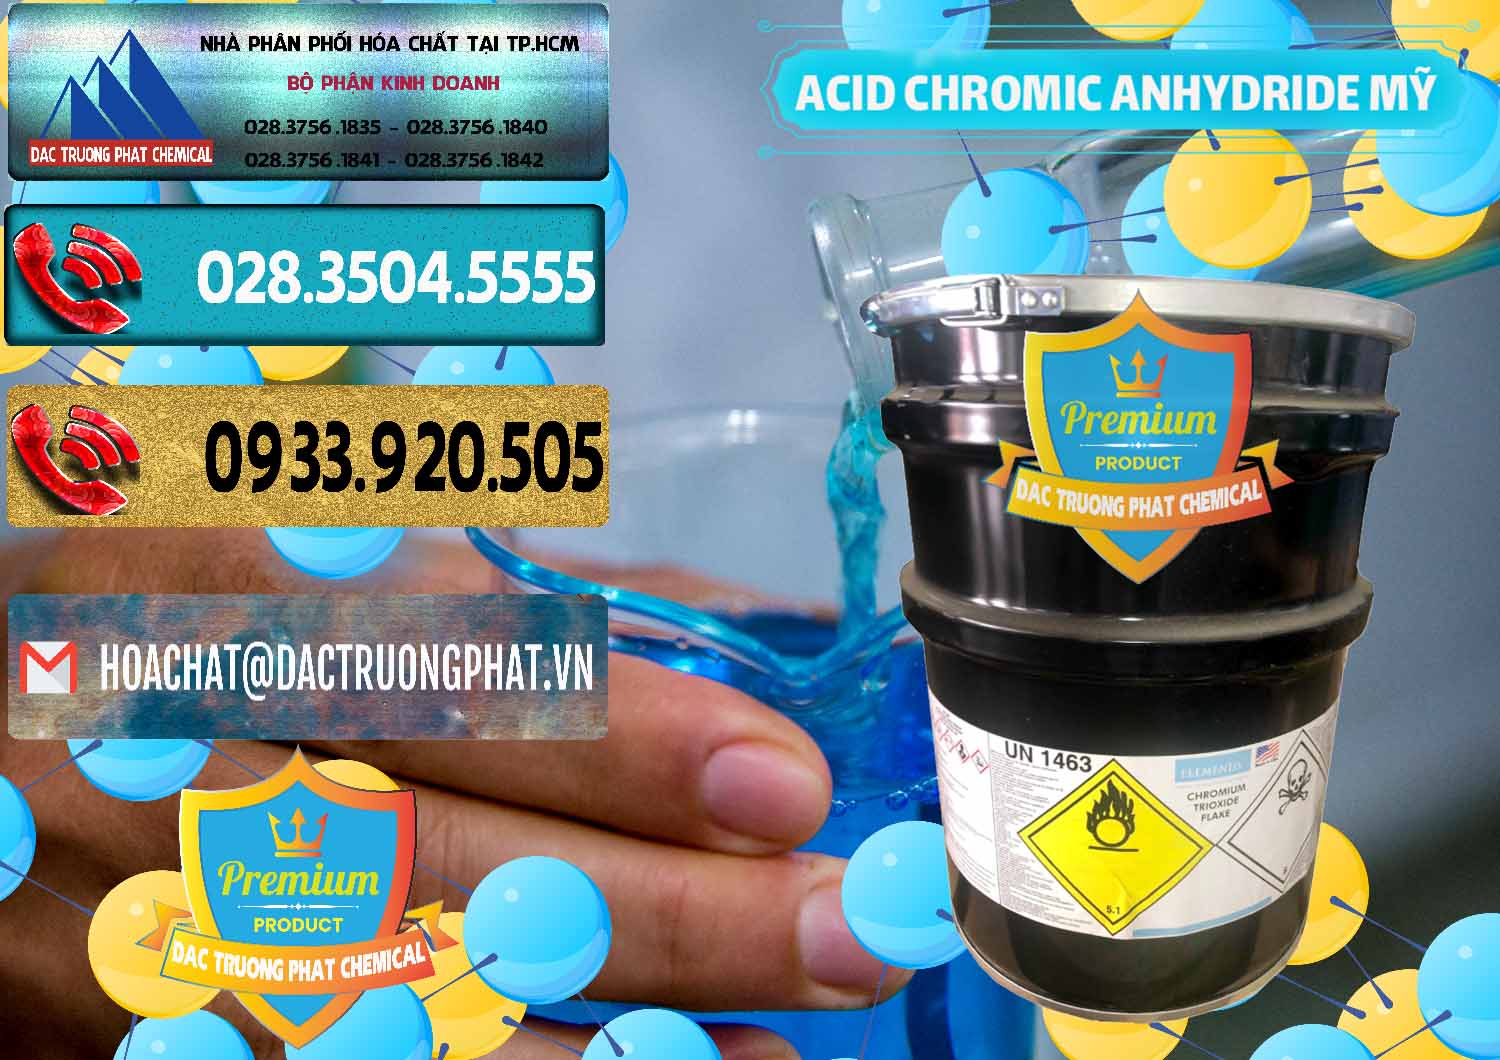 Nơi chuyên bán ( phân phối ) Acid Chromic Anhydride - Cromic CRO3 USA Mỹ - 0364 - Cty cung ứng _ phân phối hóa chất tại TP.HCM - hoachatdetnhuom.com